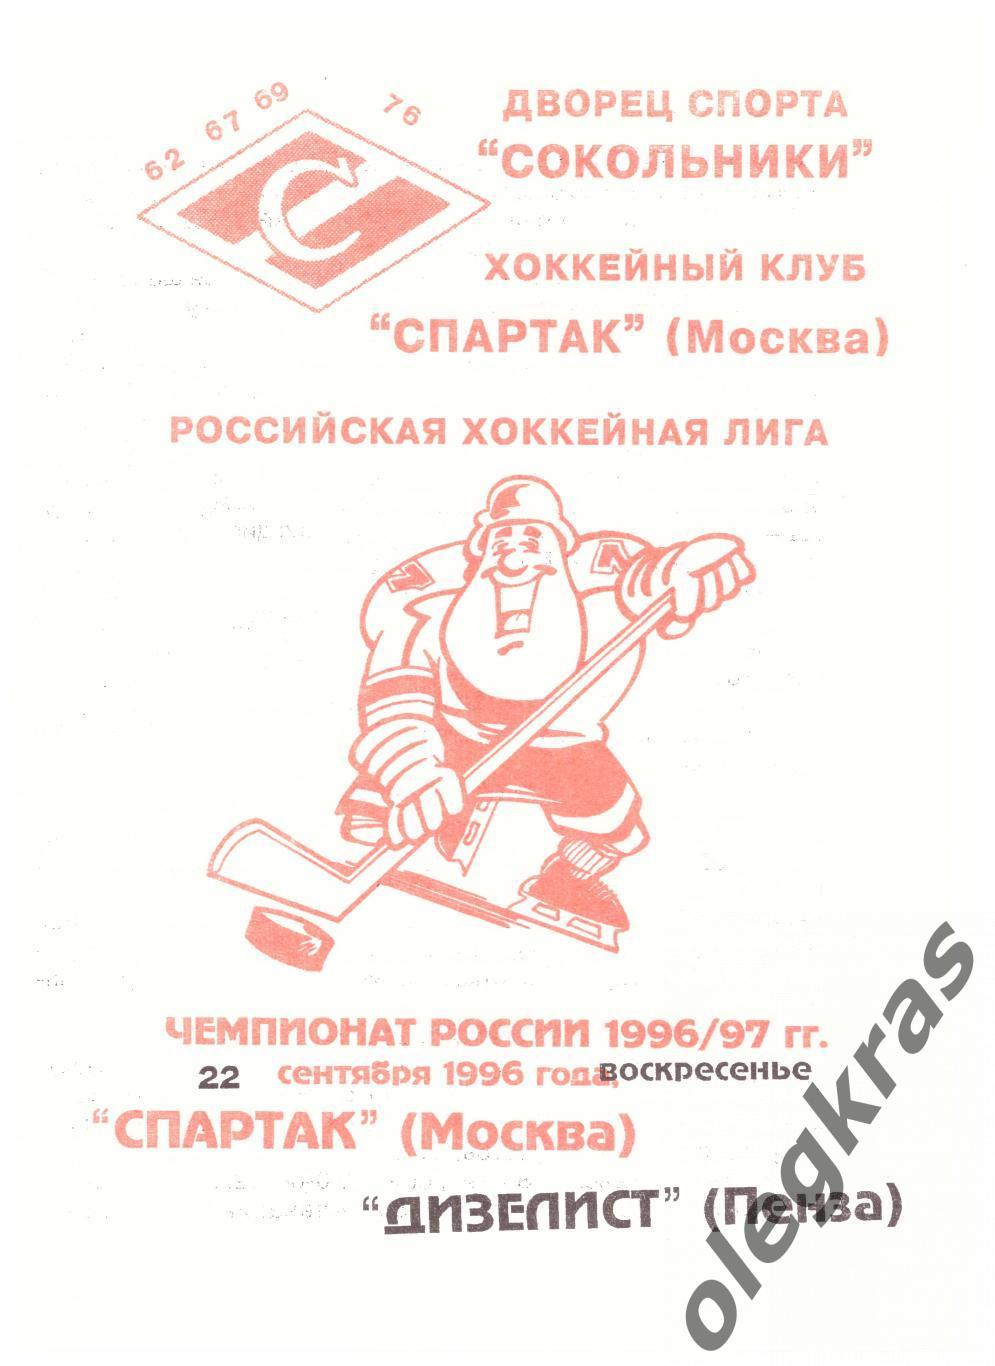 Спартак(Москва) - Дизелист(Пенза) - 22 сентября 1996 года.